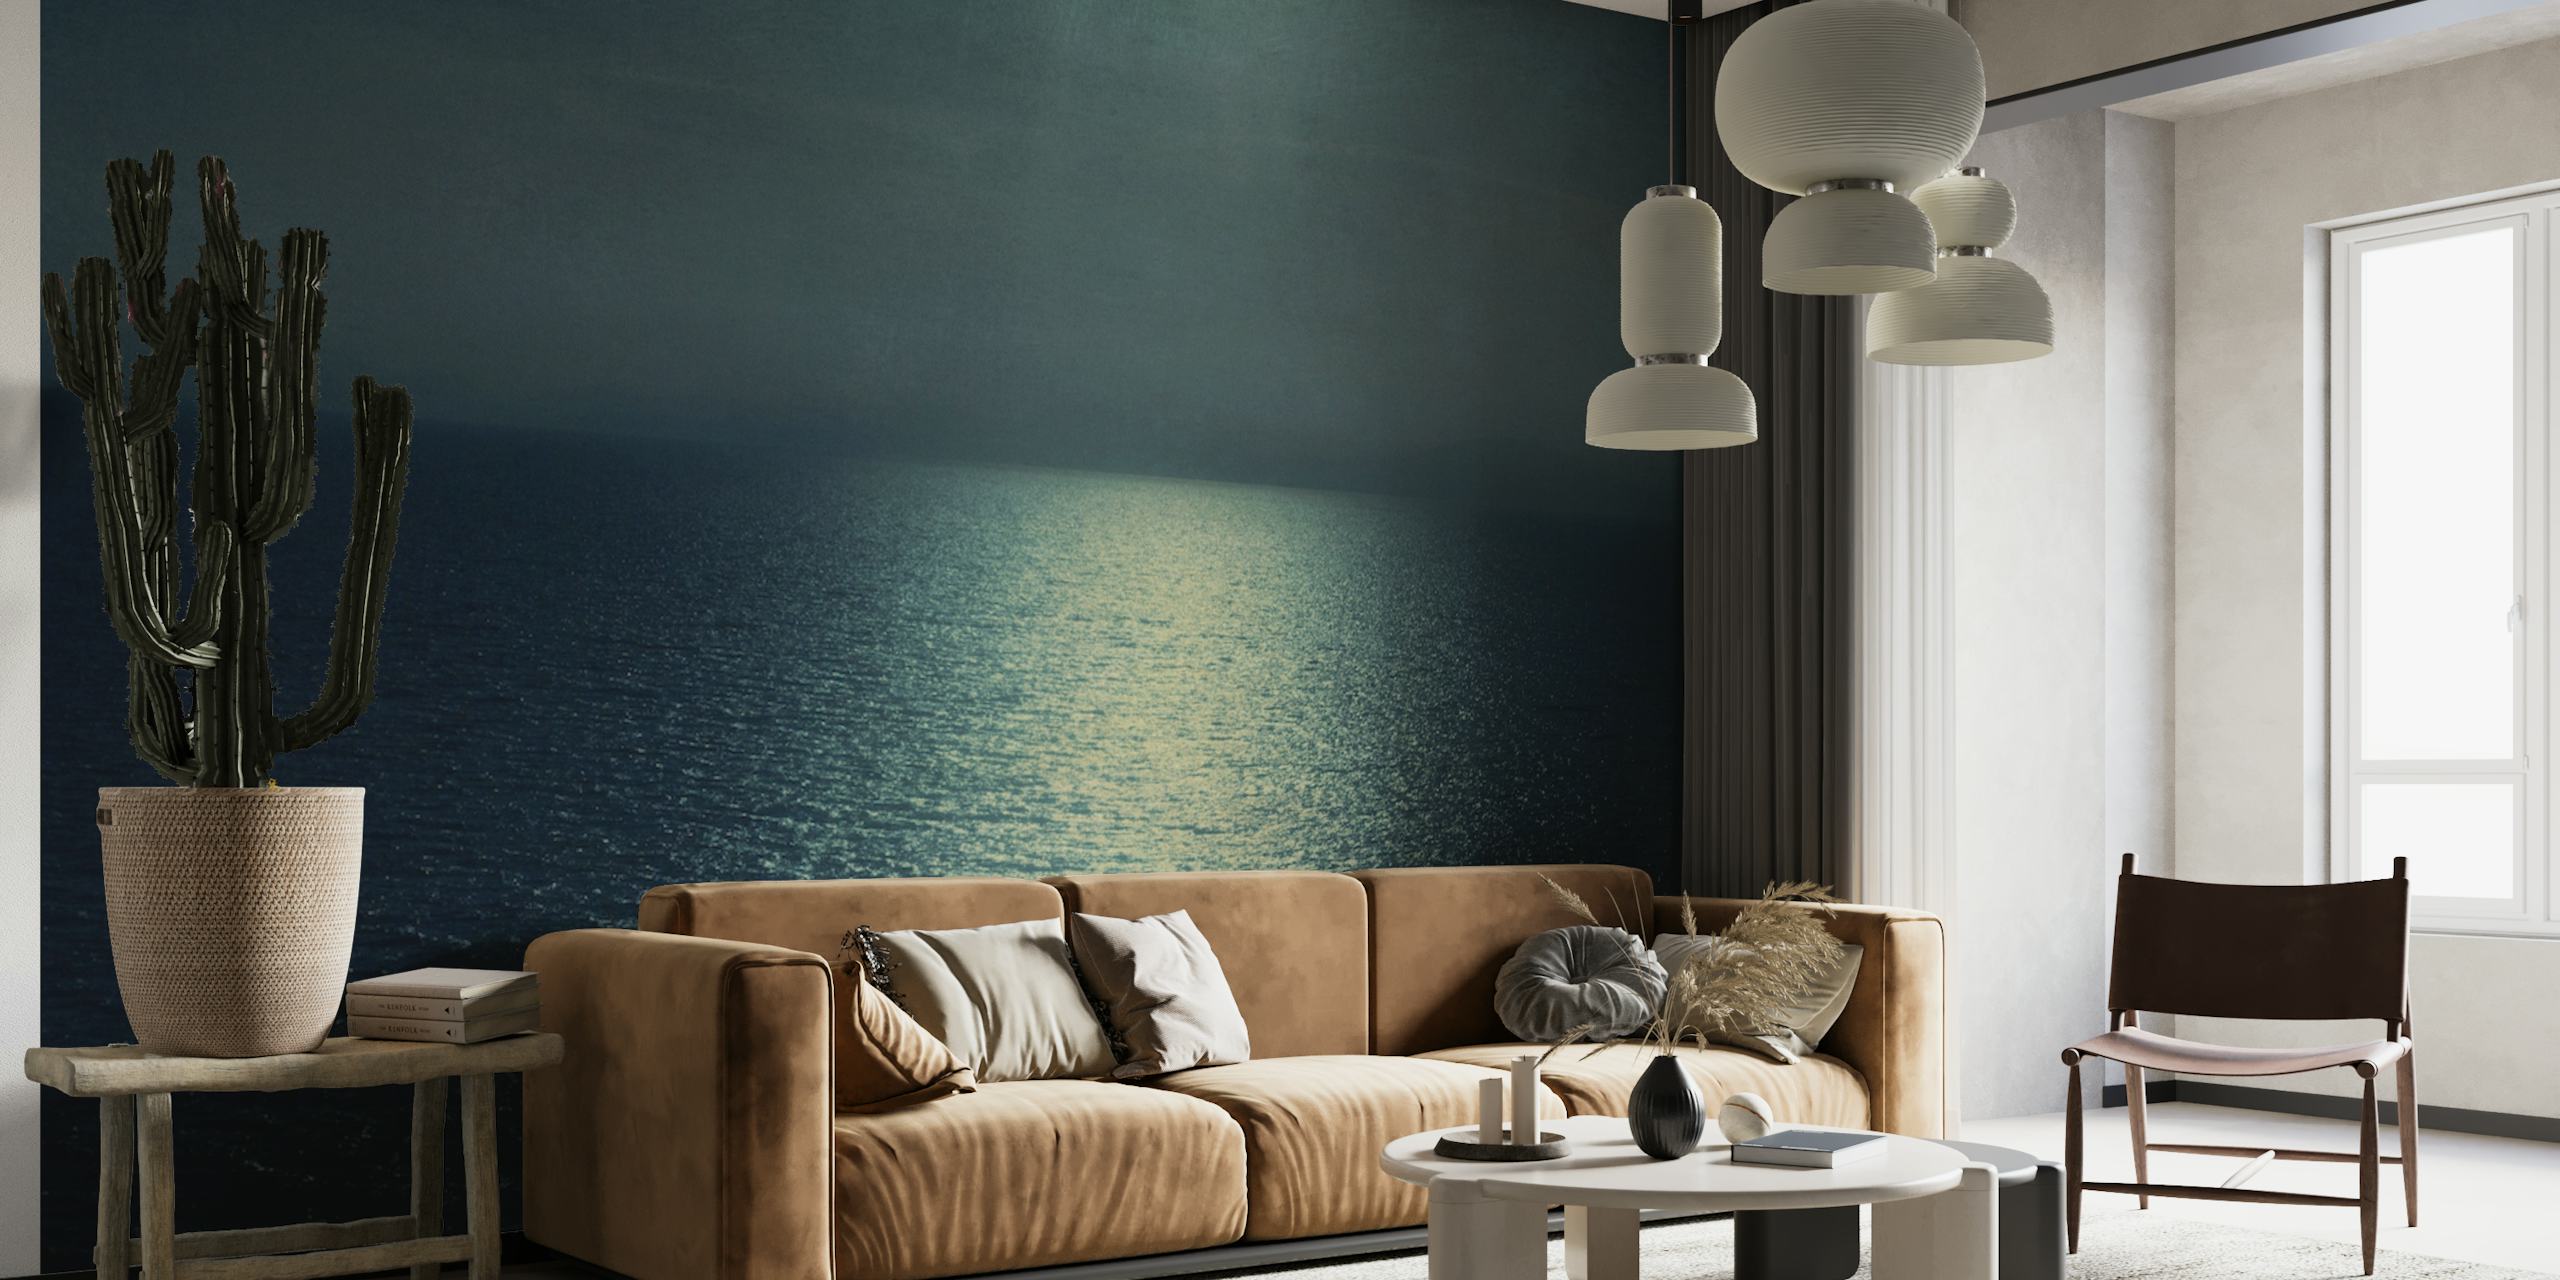 Zidna slika s mirnim oceanskim zalaskom sunca s nijansama plavozelene i smaragdnozelene boje koja odražava zlatnu svjetlost.